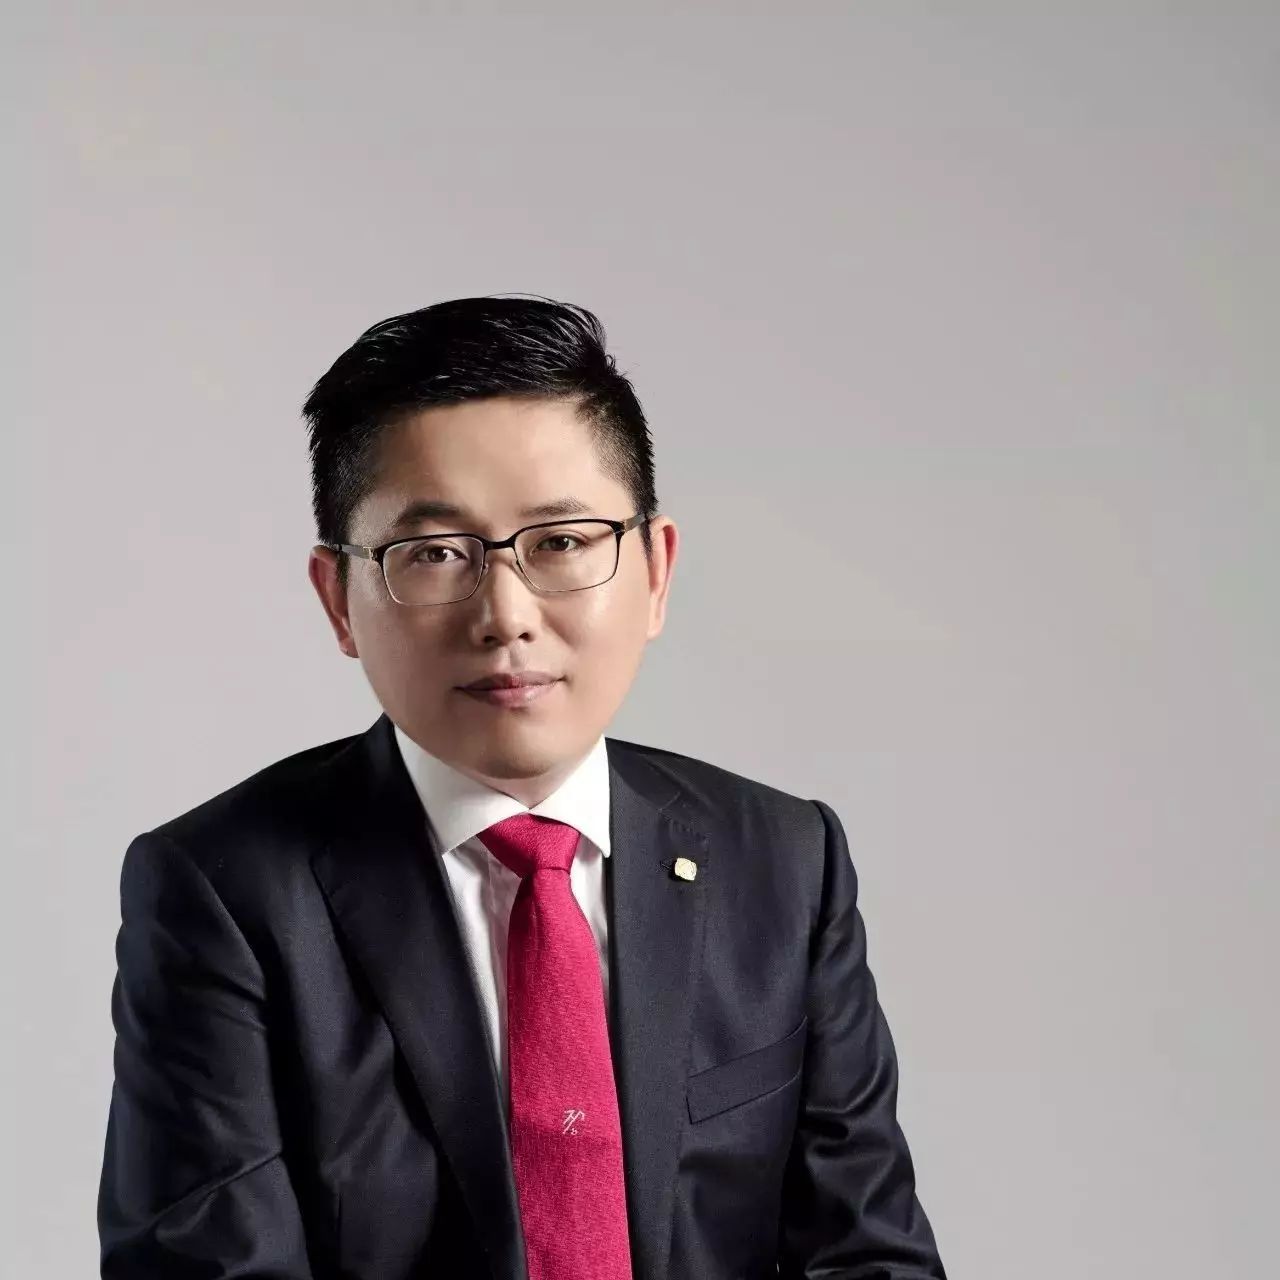 协鑫集团副董事长朱钰峰:《意见》坚强了企业